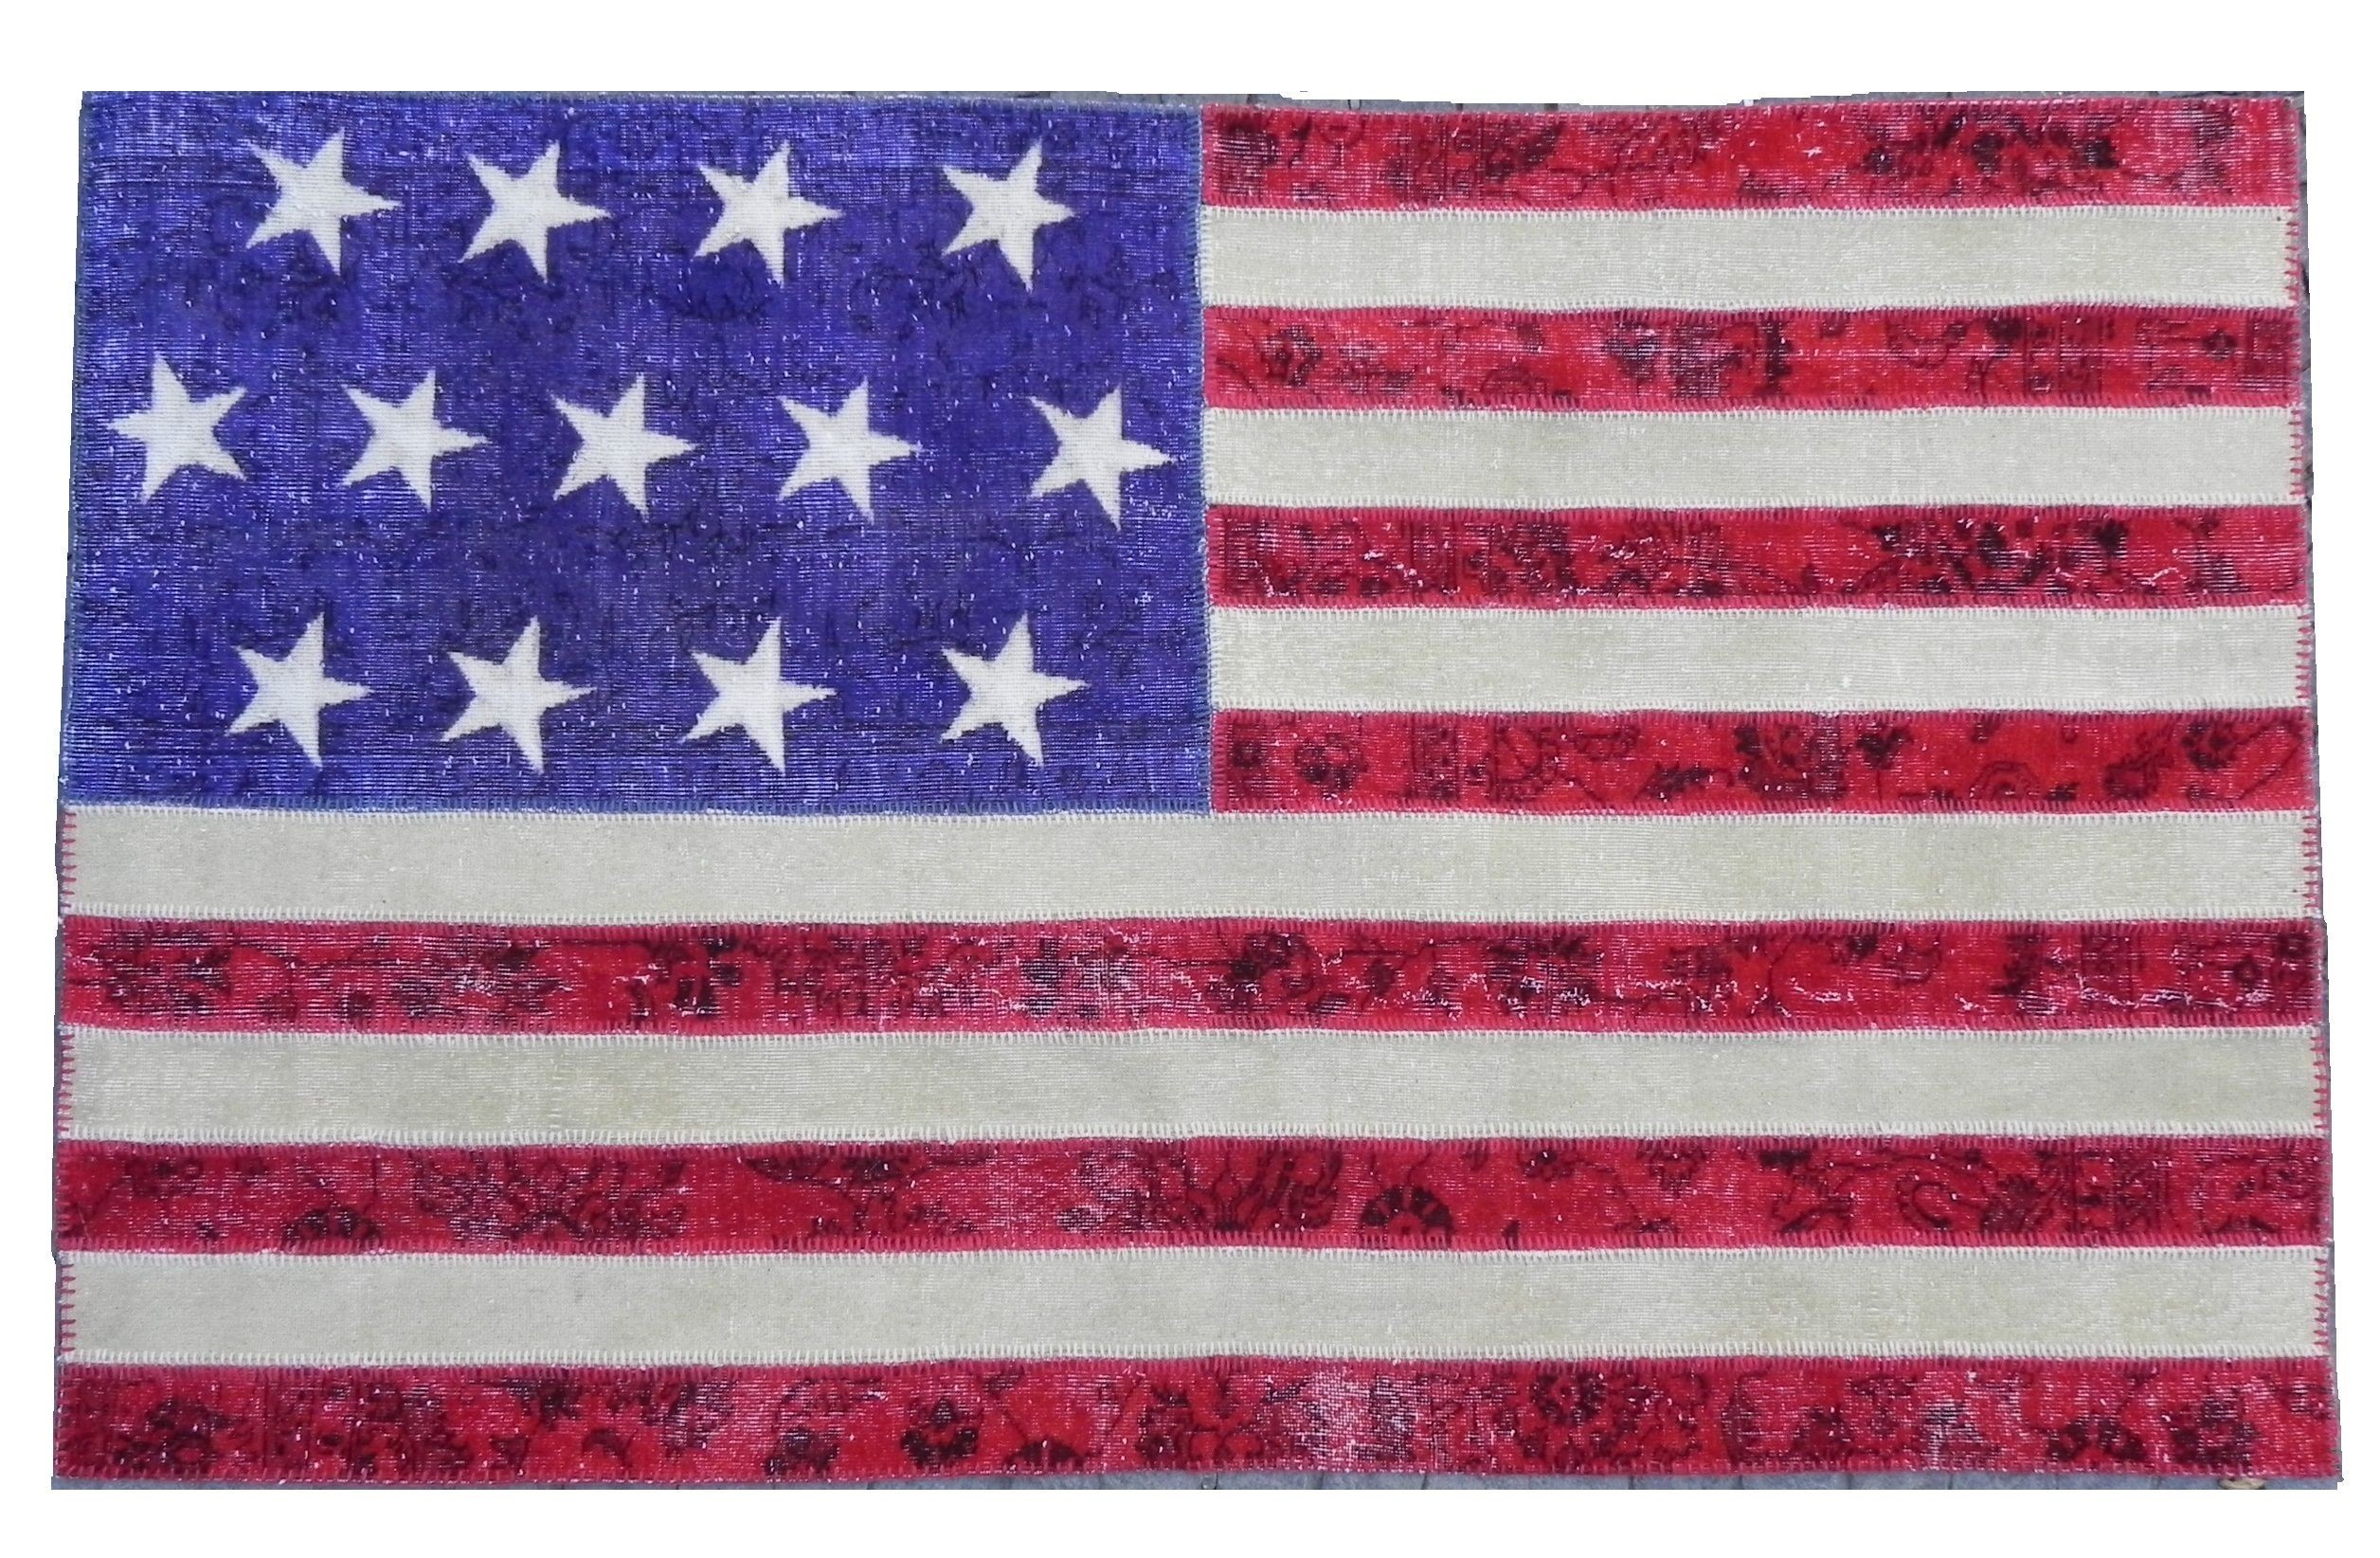 2512x1644 ÃÂ« Vintage American Flag Wallpaper ÃÂ· Vintage American Flag Wallpaper HD ÃÂ»